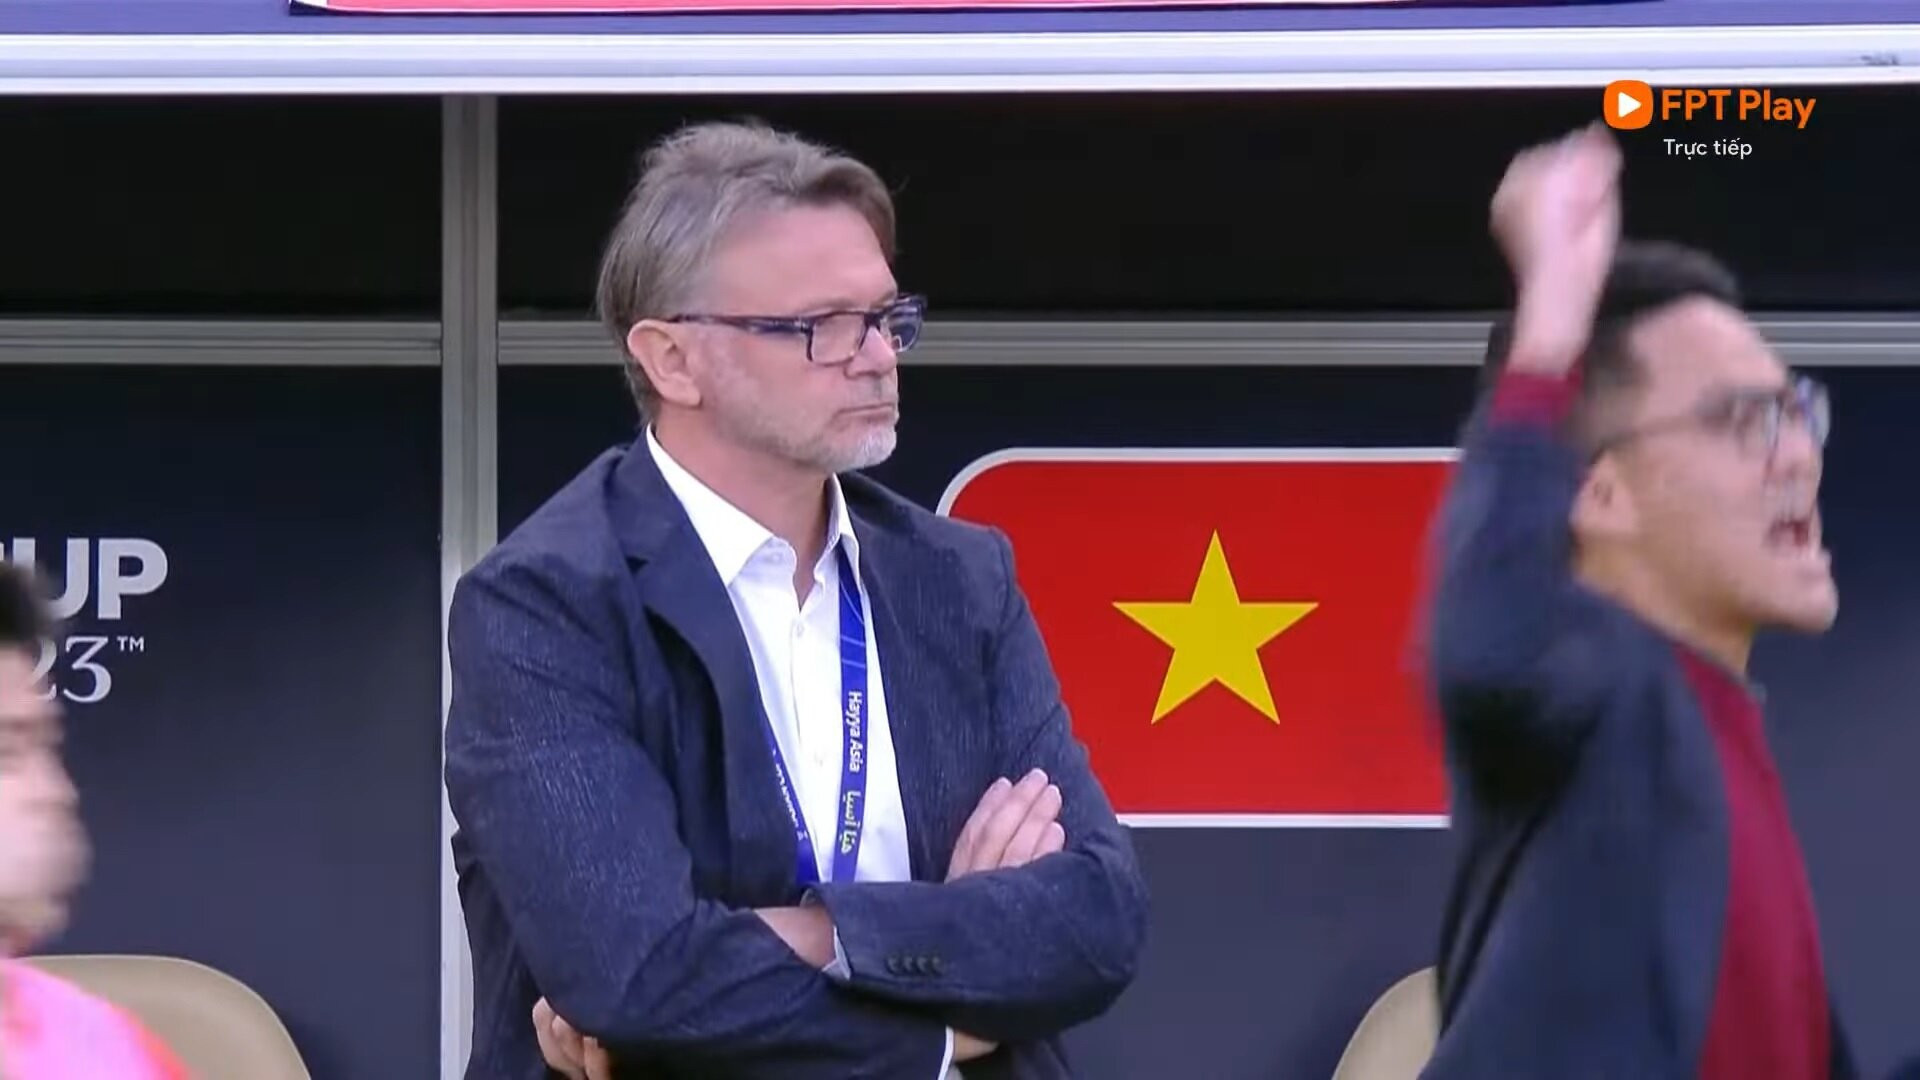 HLV Troussier lạnh lùng khi đội tuyển Việt Nam dẫn trước Nhật Bản.